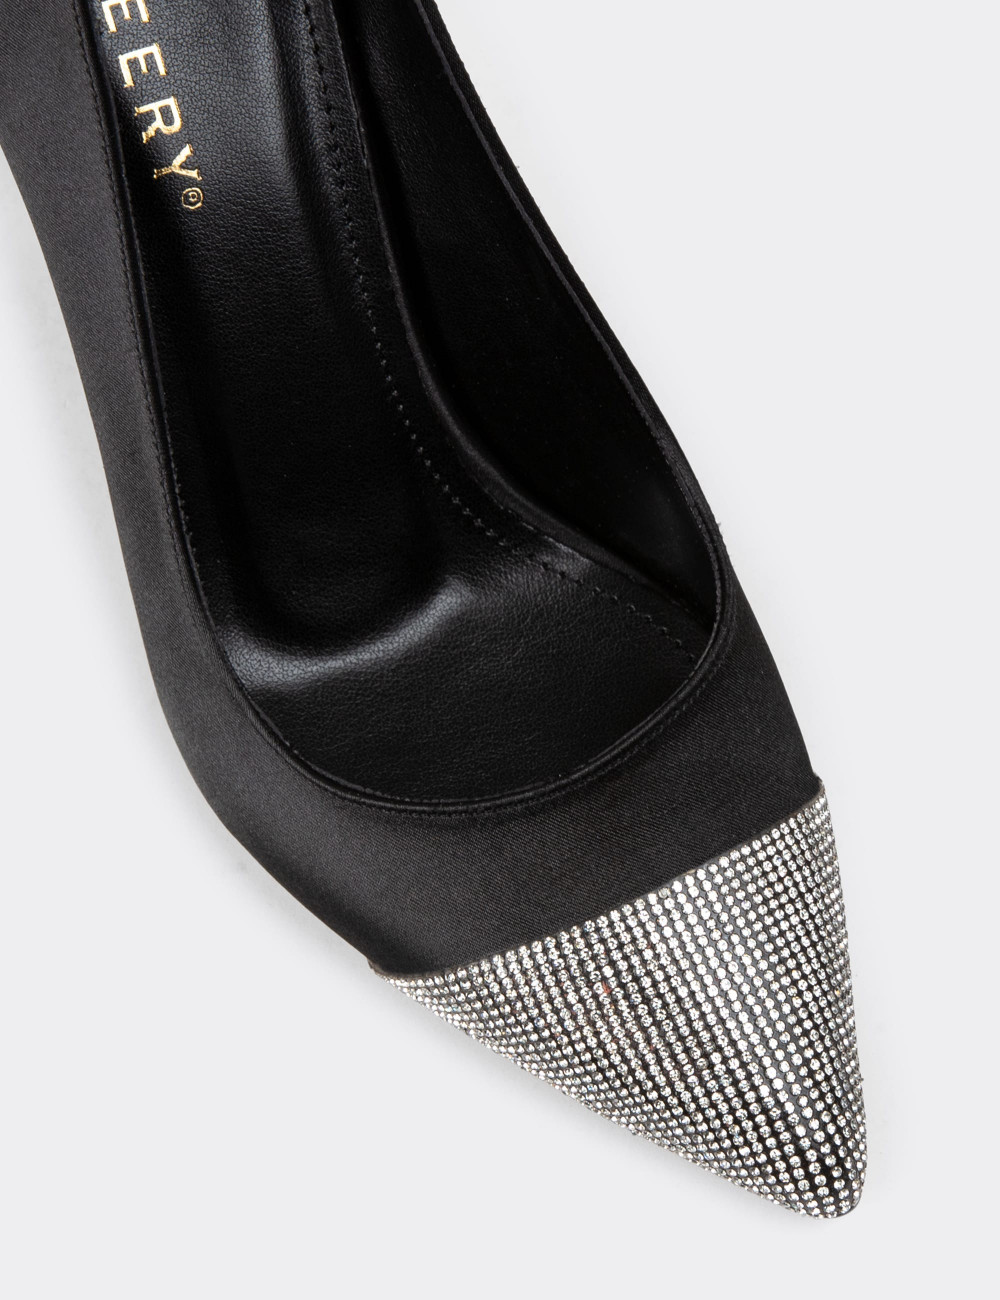 Siyah Saten Taşlı Stiletto Kadın Topuklu Ayakkabı - K0030ZSYHM01